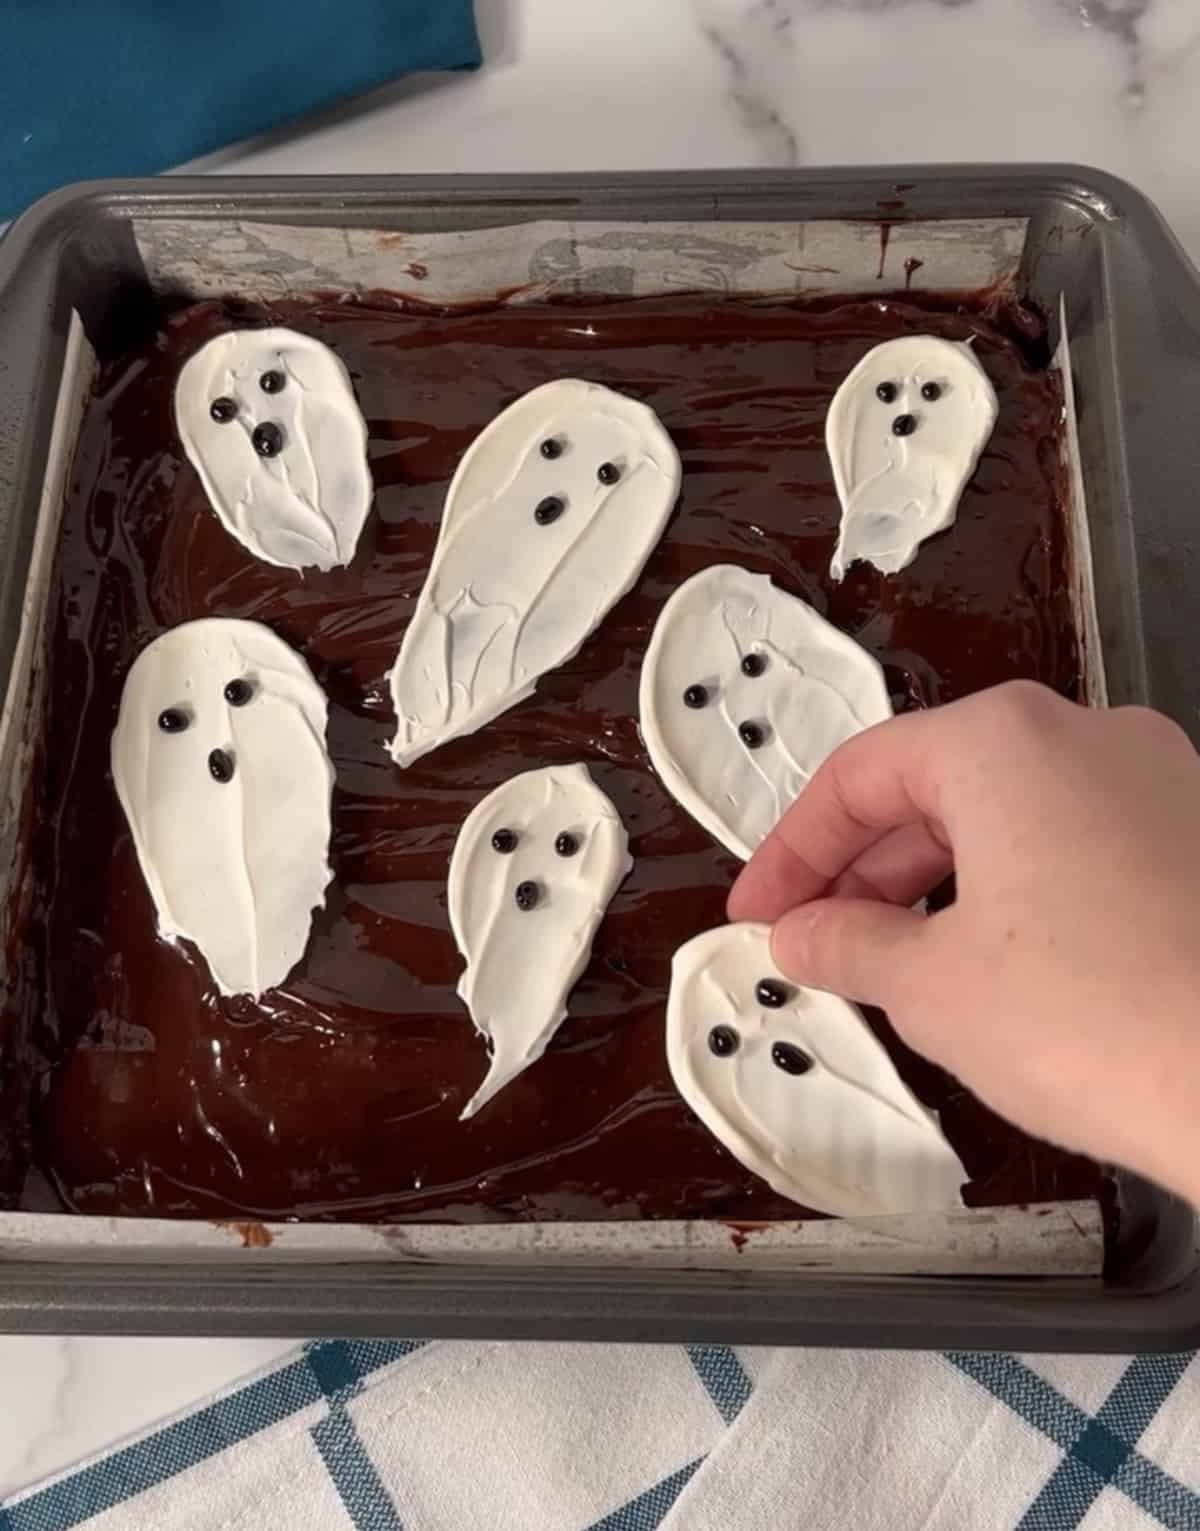 Ghost brownies in a pan.